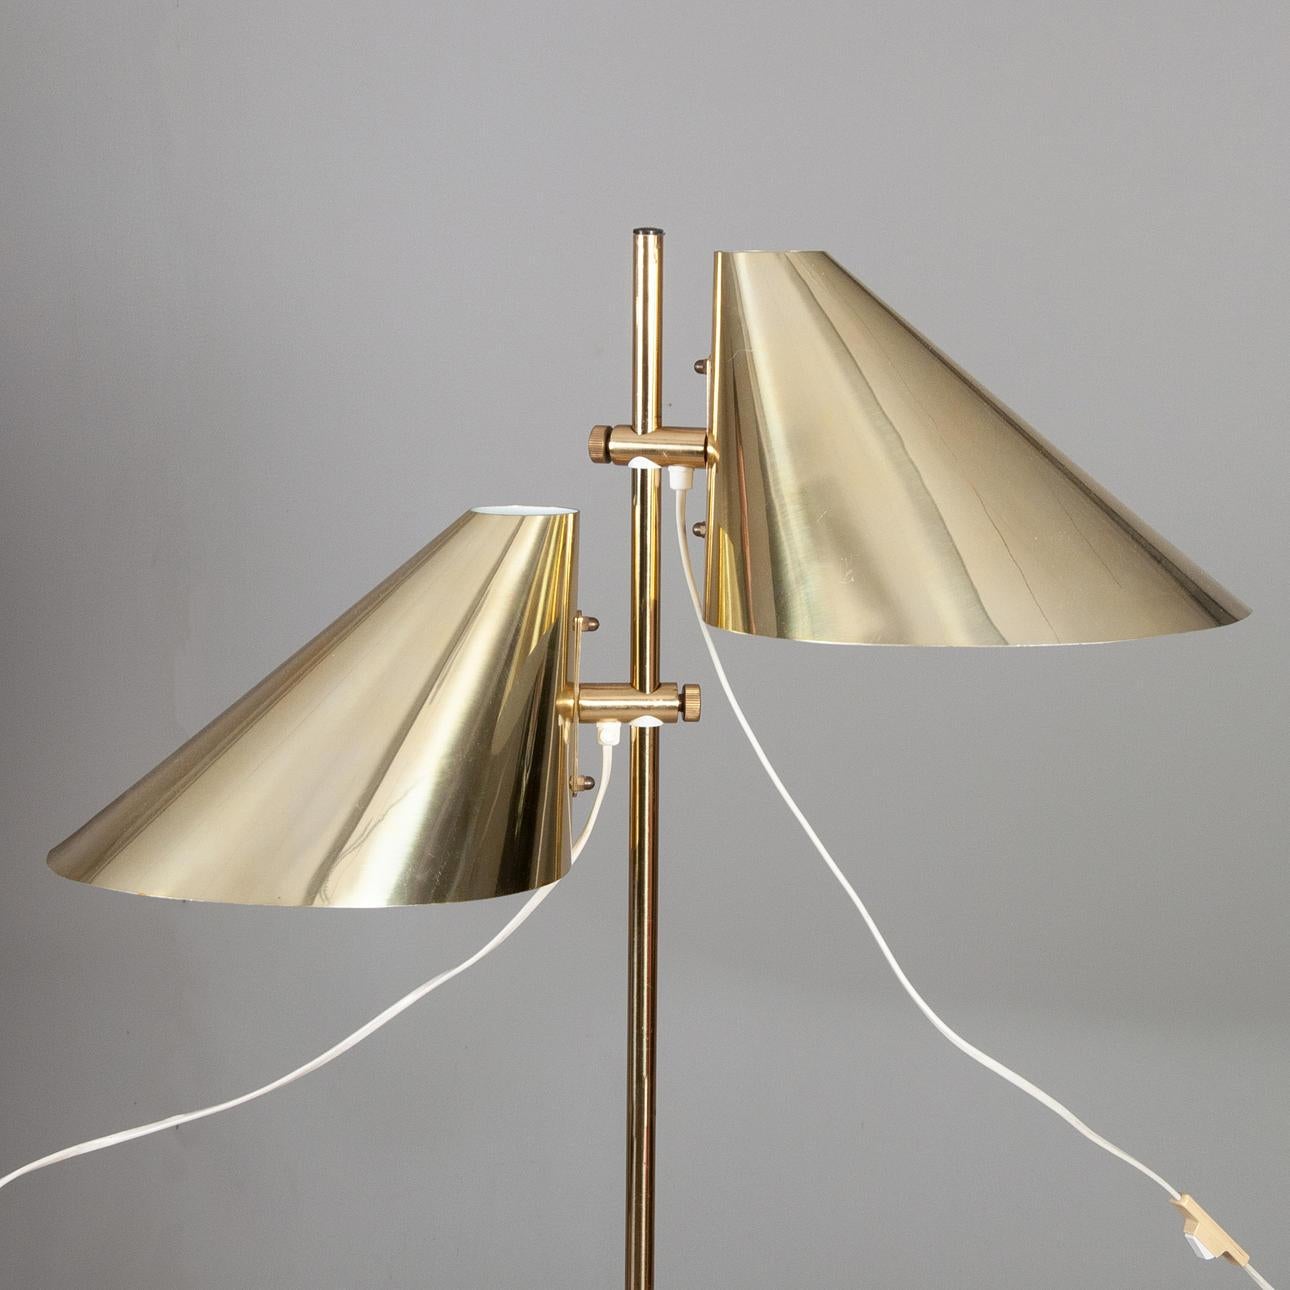 Chic et élégant, ce lampadaire est doté d'un système de réglage en hauteur des 2 lampes qui permet un éclairage esthétique et raffiné. Lampe moderne produite en Suède par Markaryd dans les années 1960. Sa structure en laiton lui confère beaucoup de